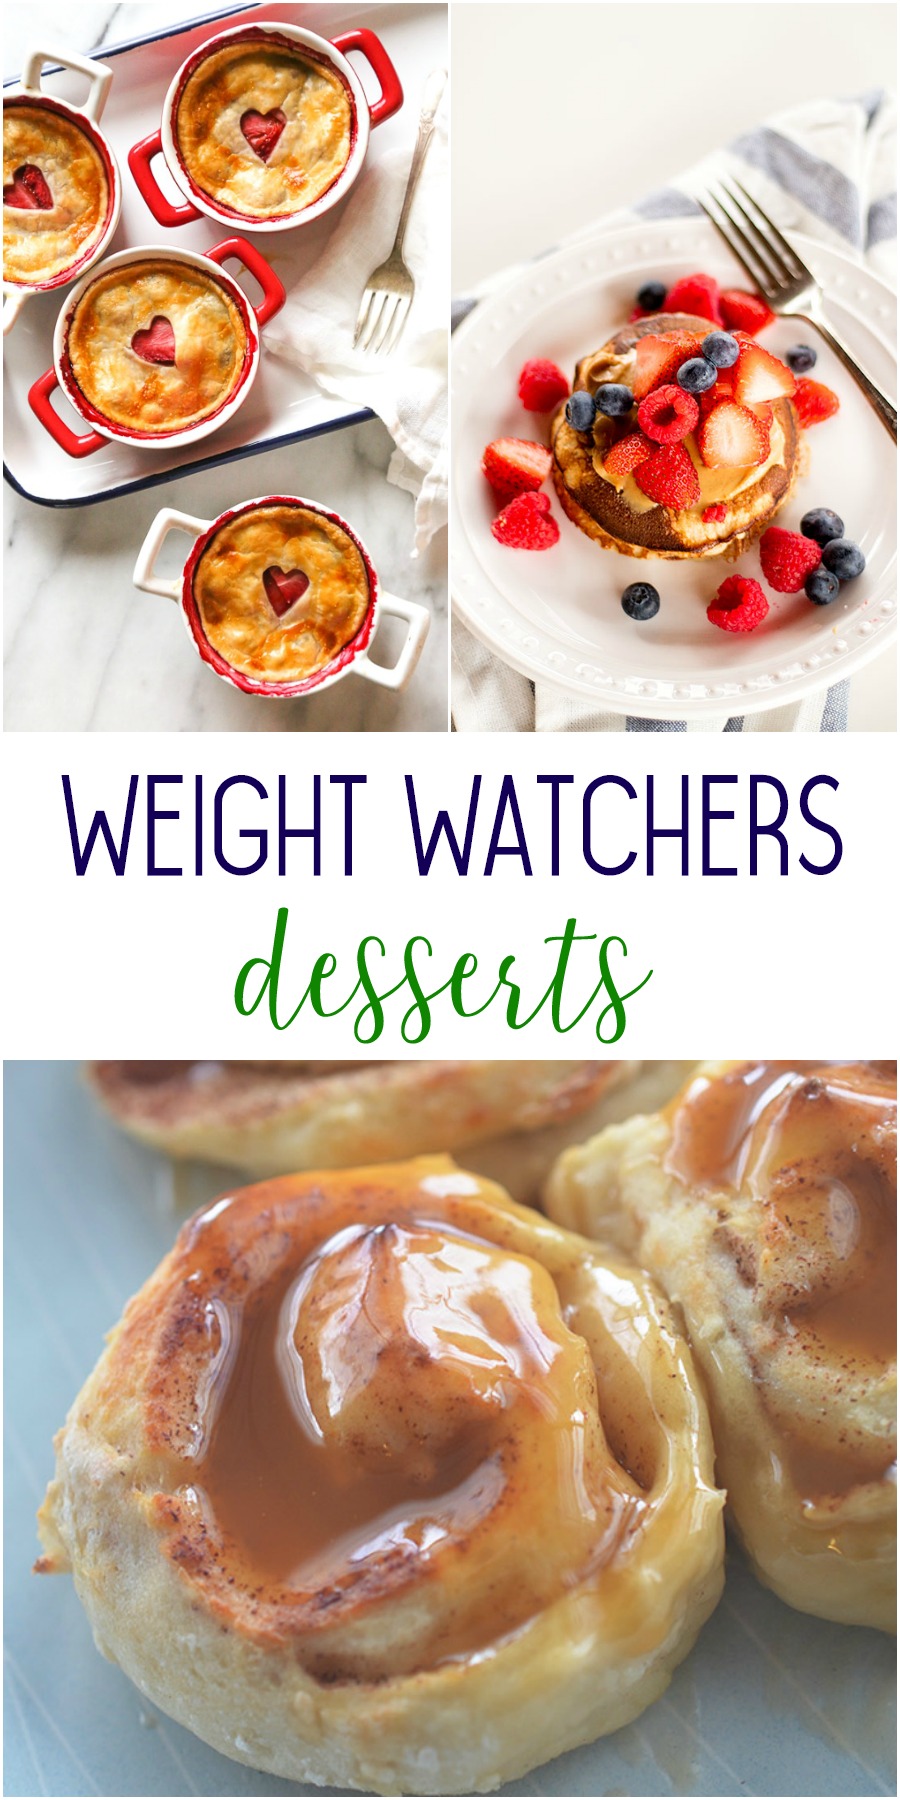 Weight Watchers desserts